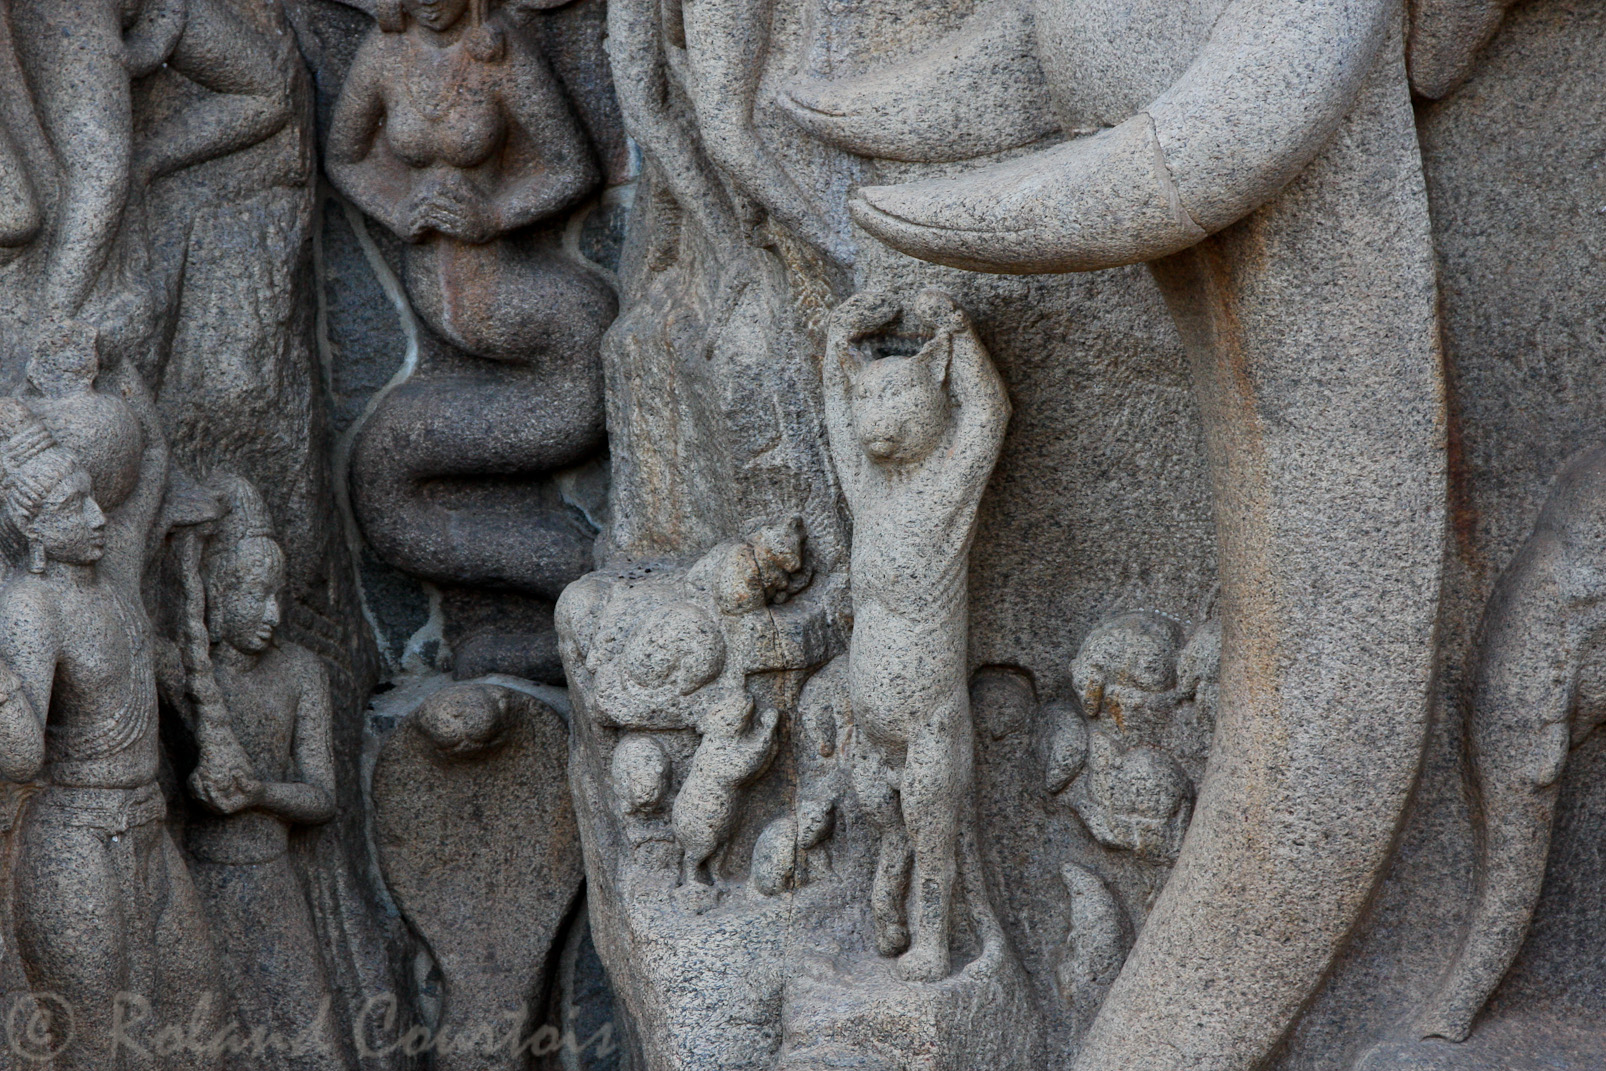 Descente du Gange: sous les défenses de l'éléphant, un chat, en position de jogi, pour la plus grande joie des souris et des rats qui gambadent autour de lui.